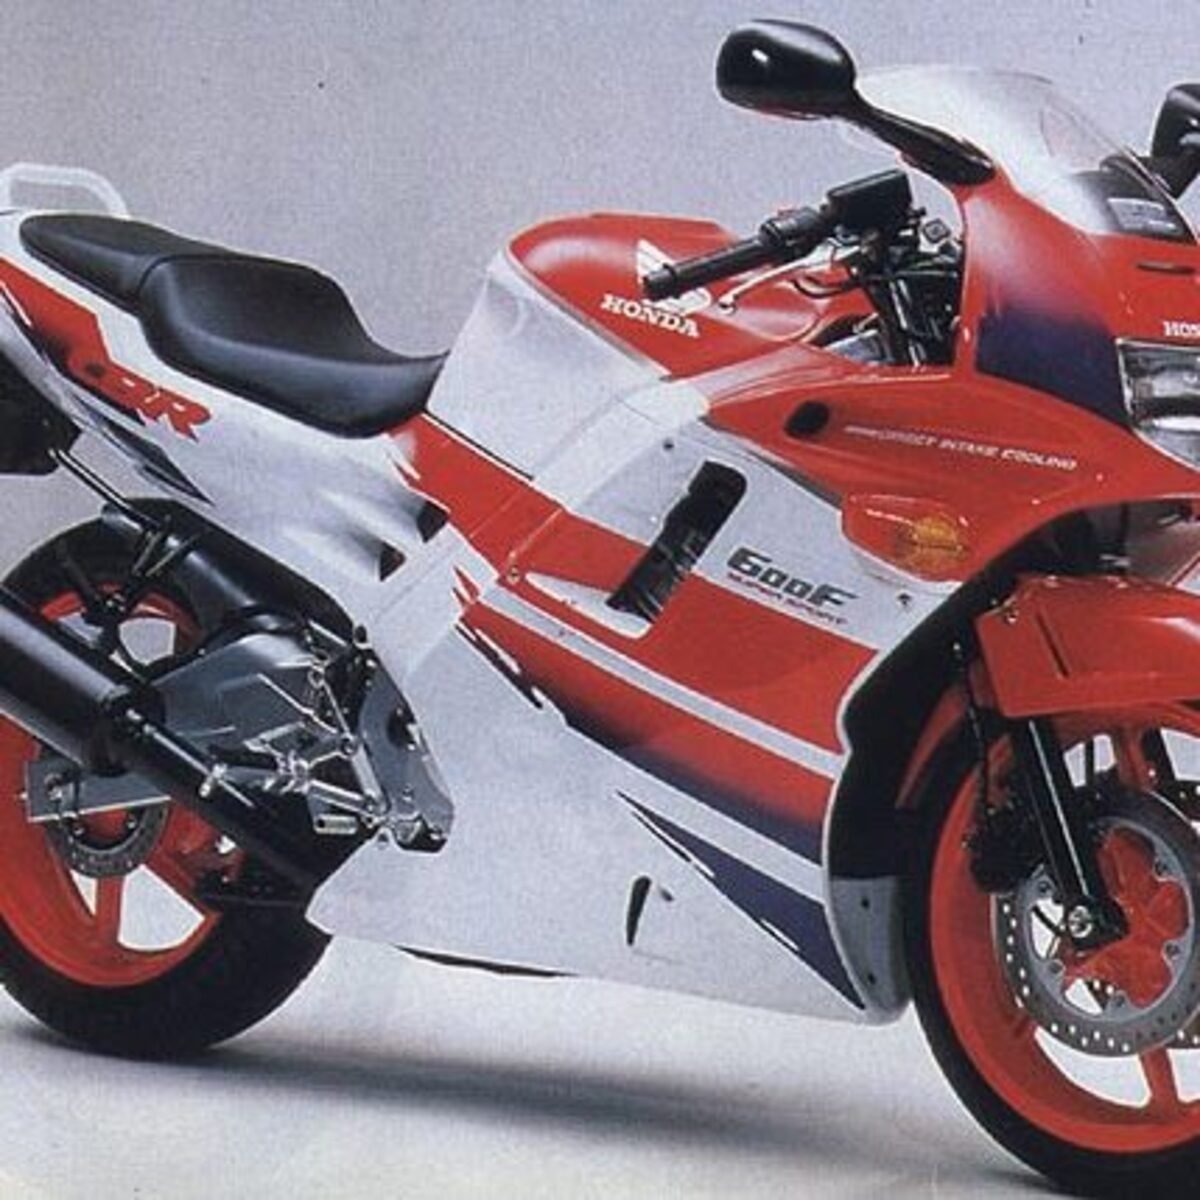 Honda CBR 600 F (1991 - 94)